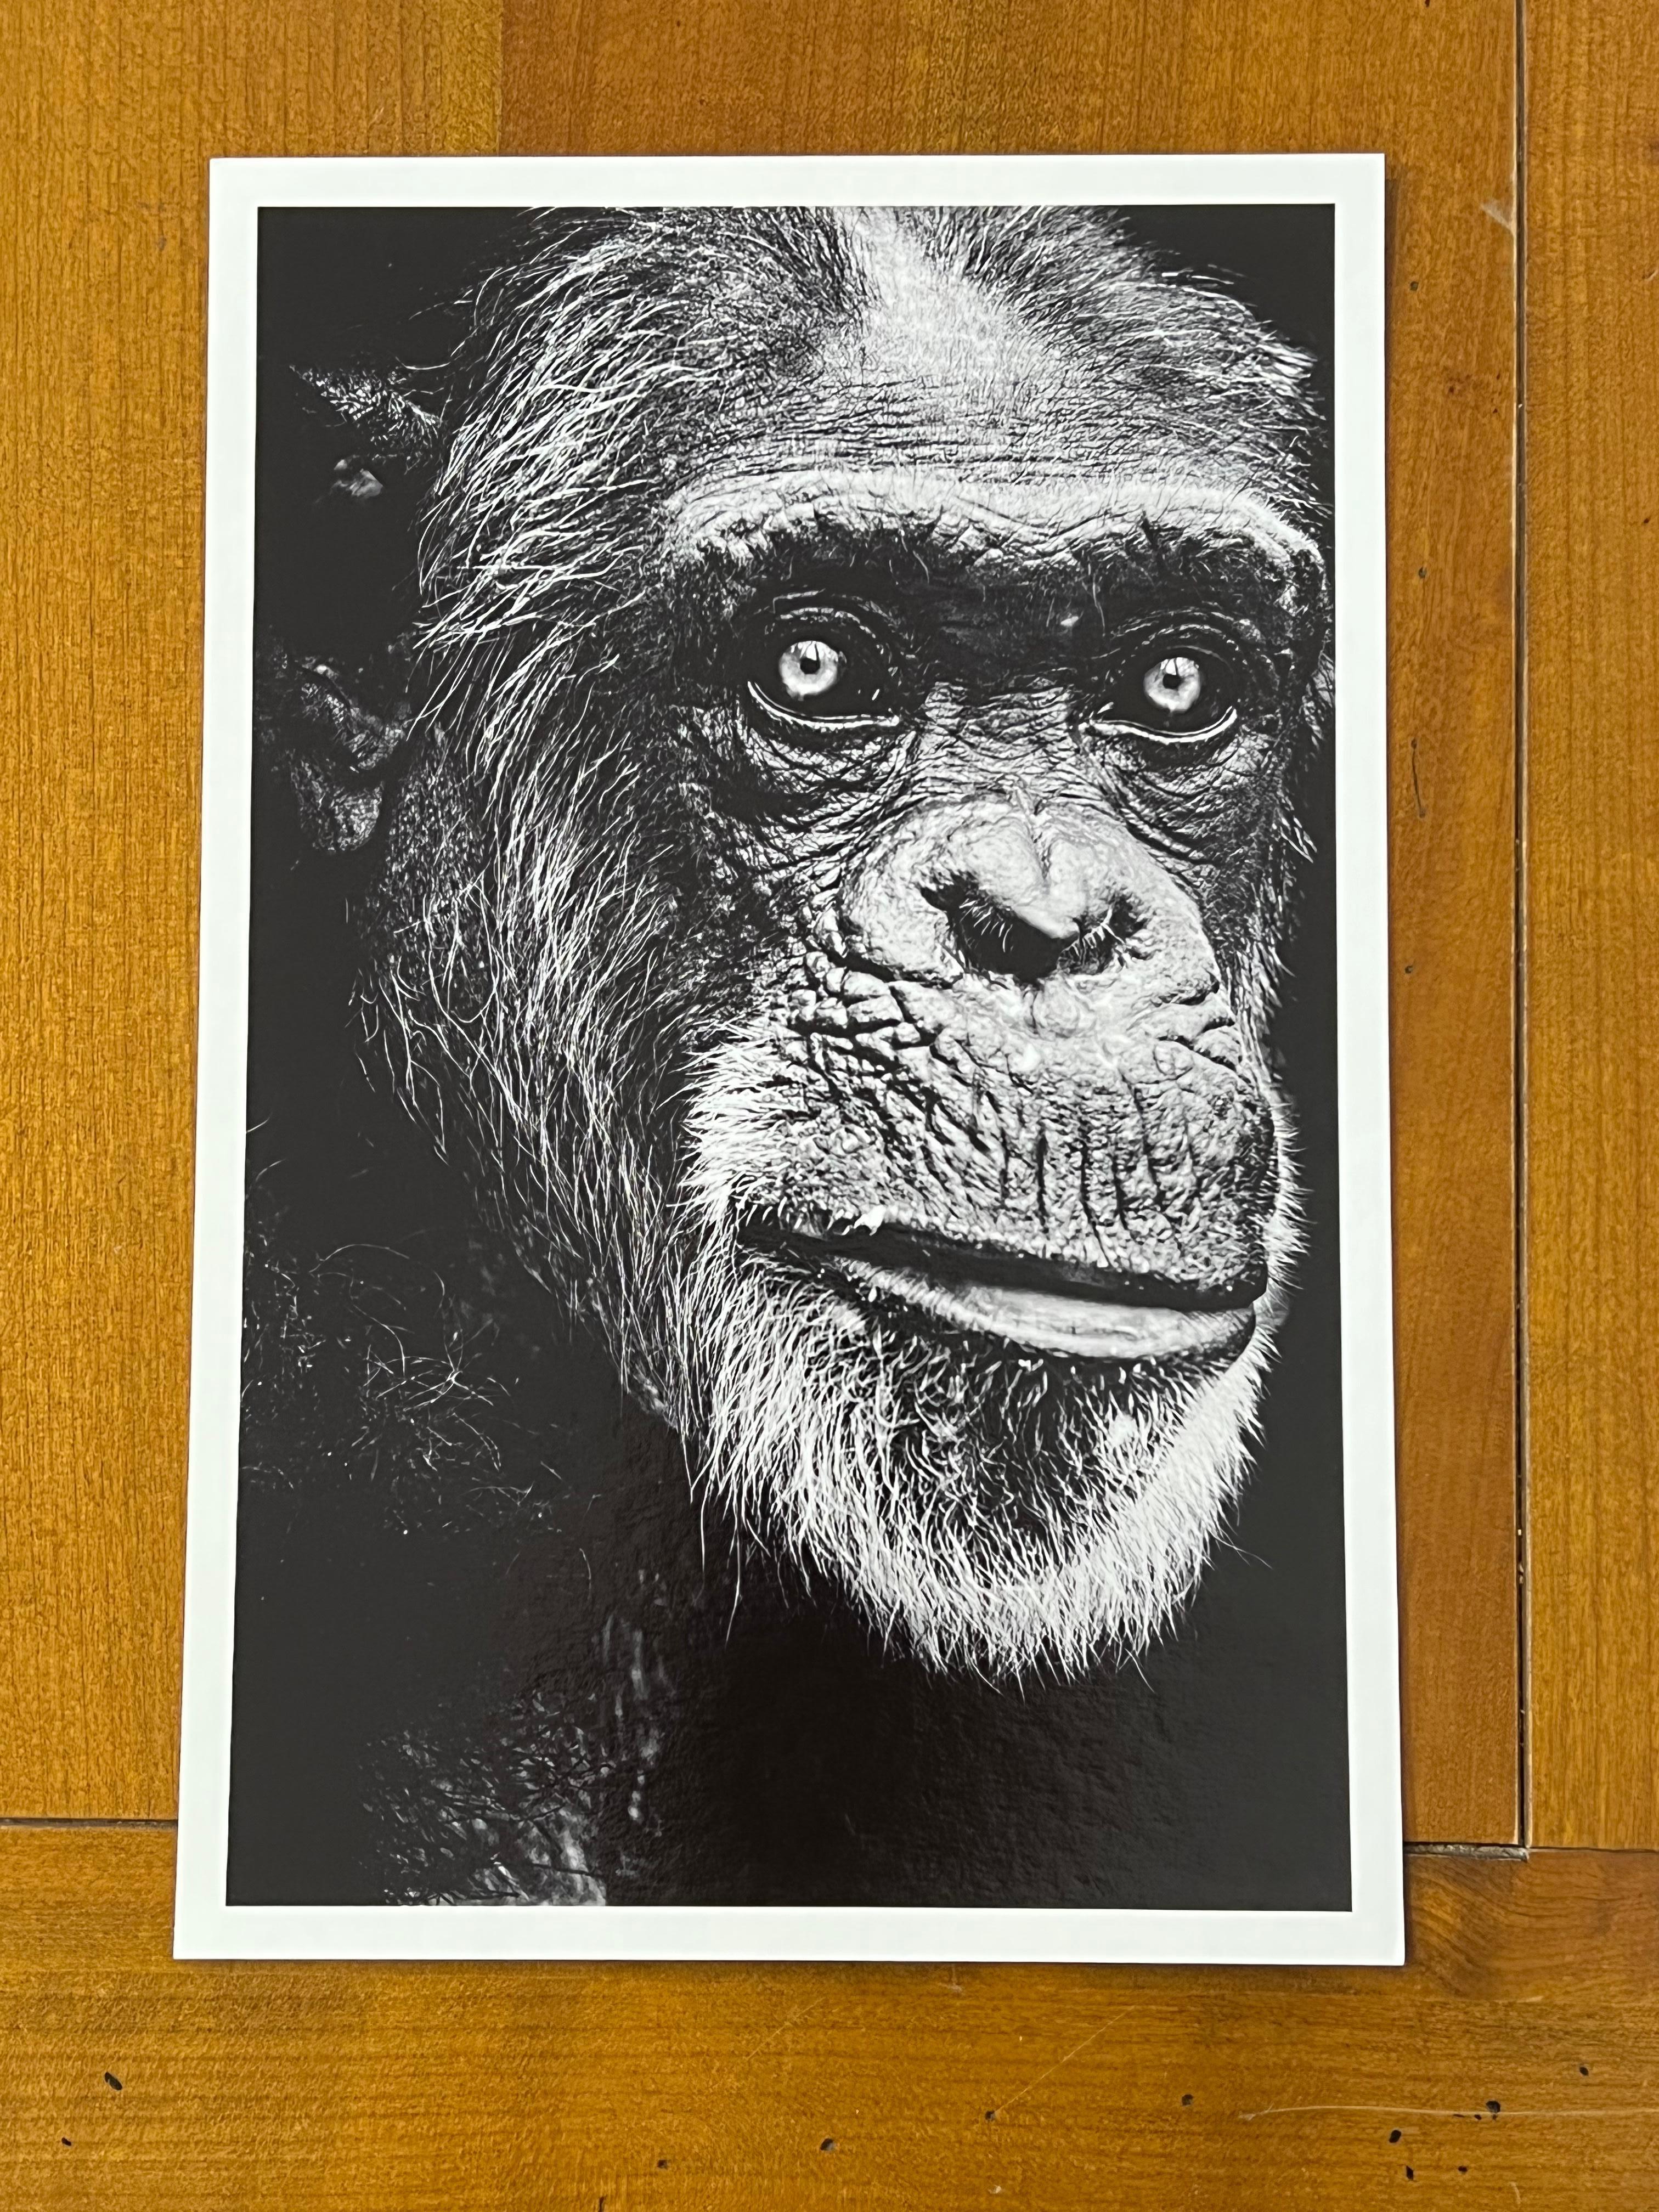 Schimpansen (Pan troglodytes)
In anglophonen Publikationen wird das Adjektiv 